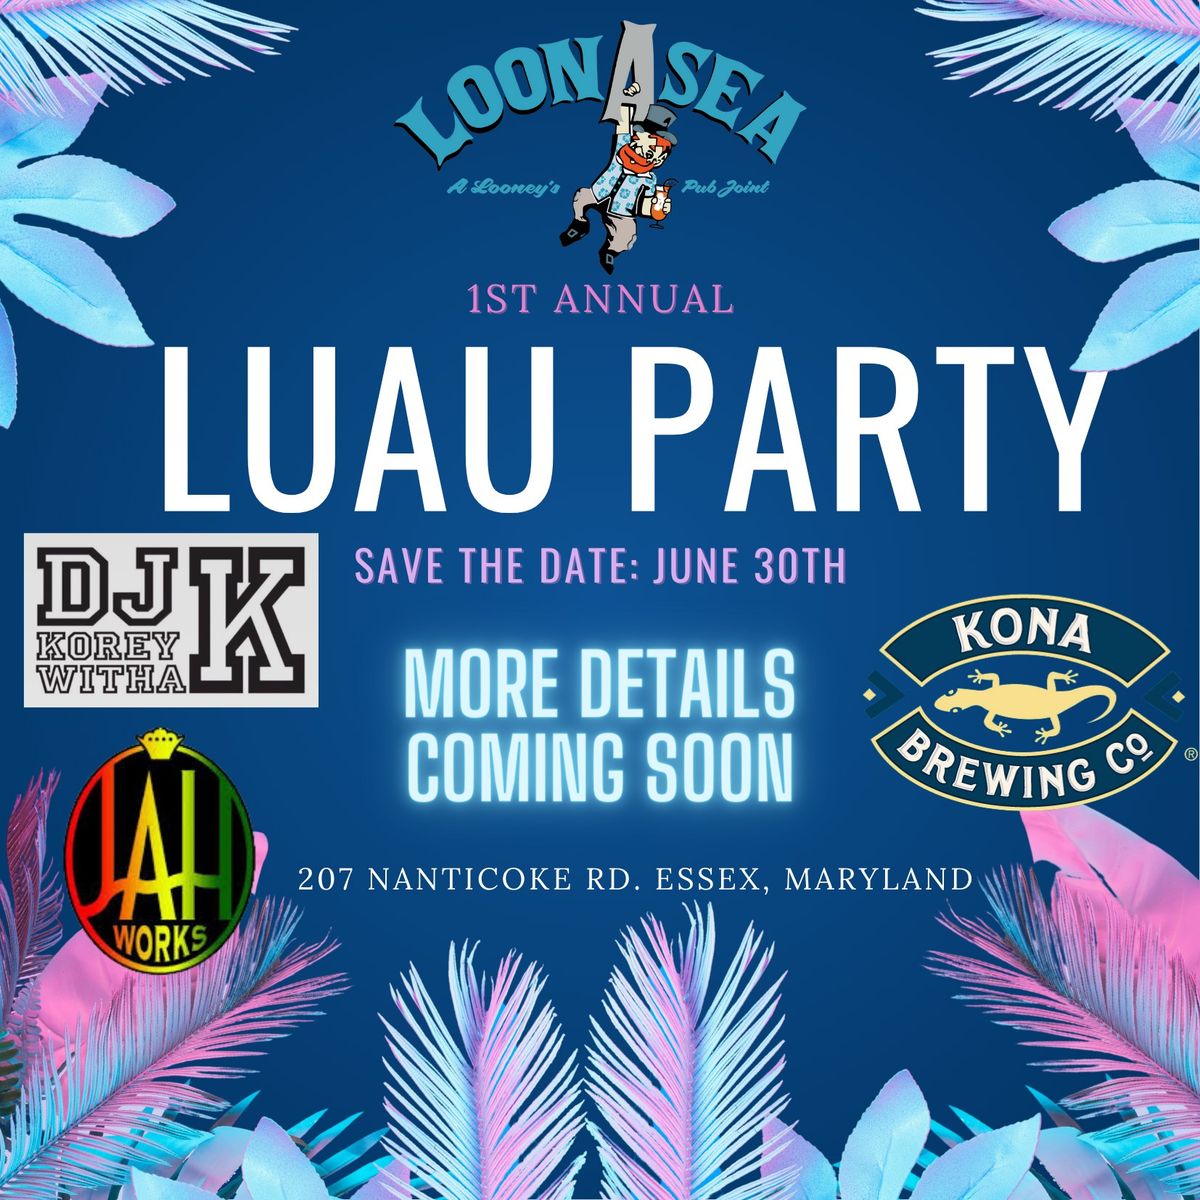 LoonAsea's 1st Annual Luau Party \ud83e\udd65\ud83c\udf34